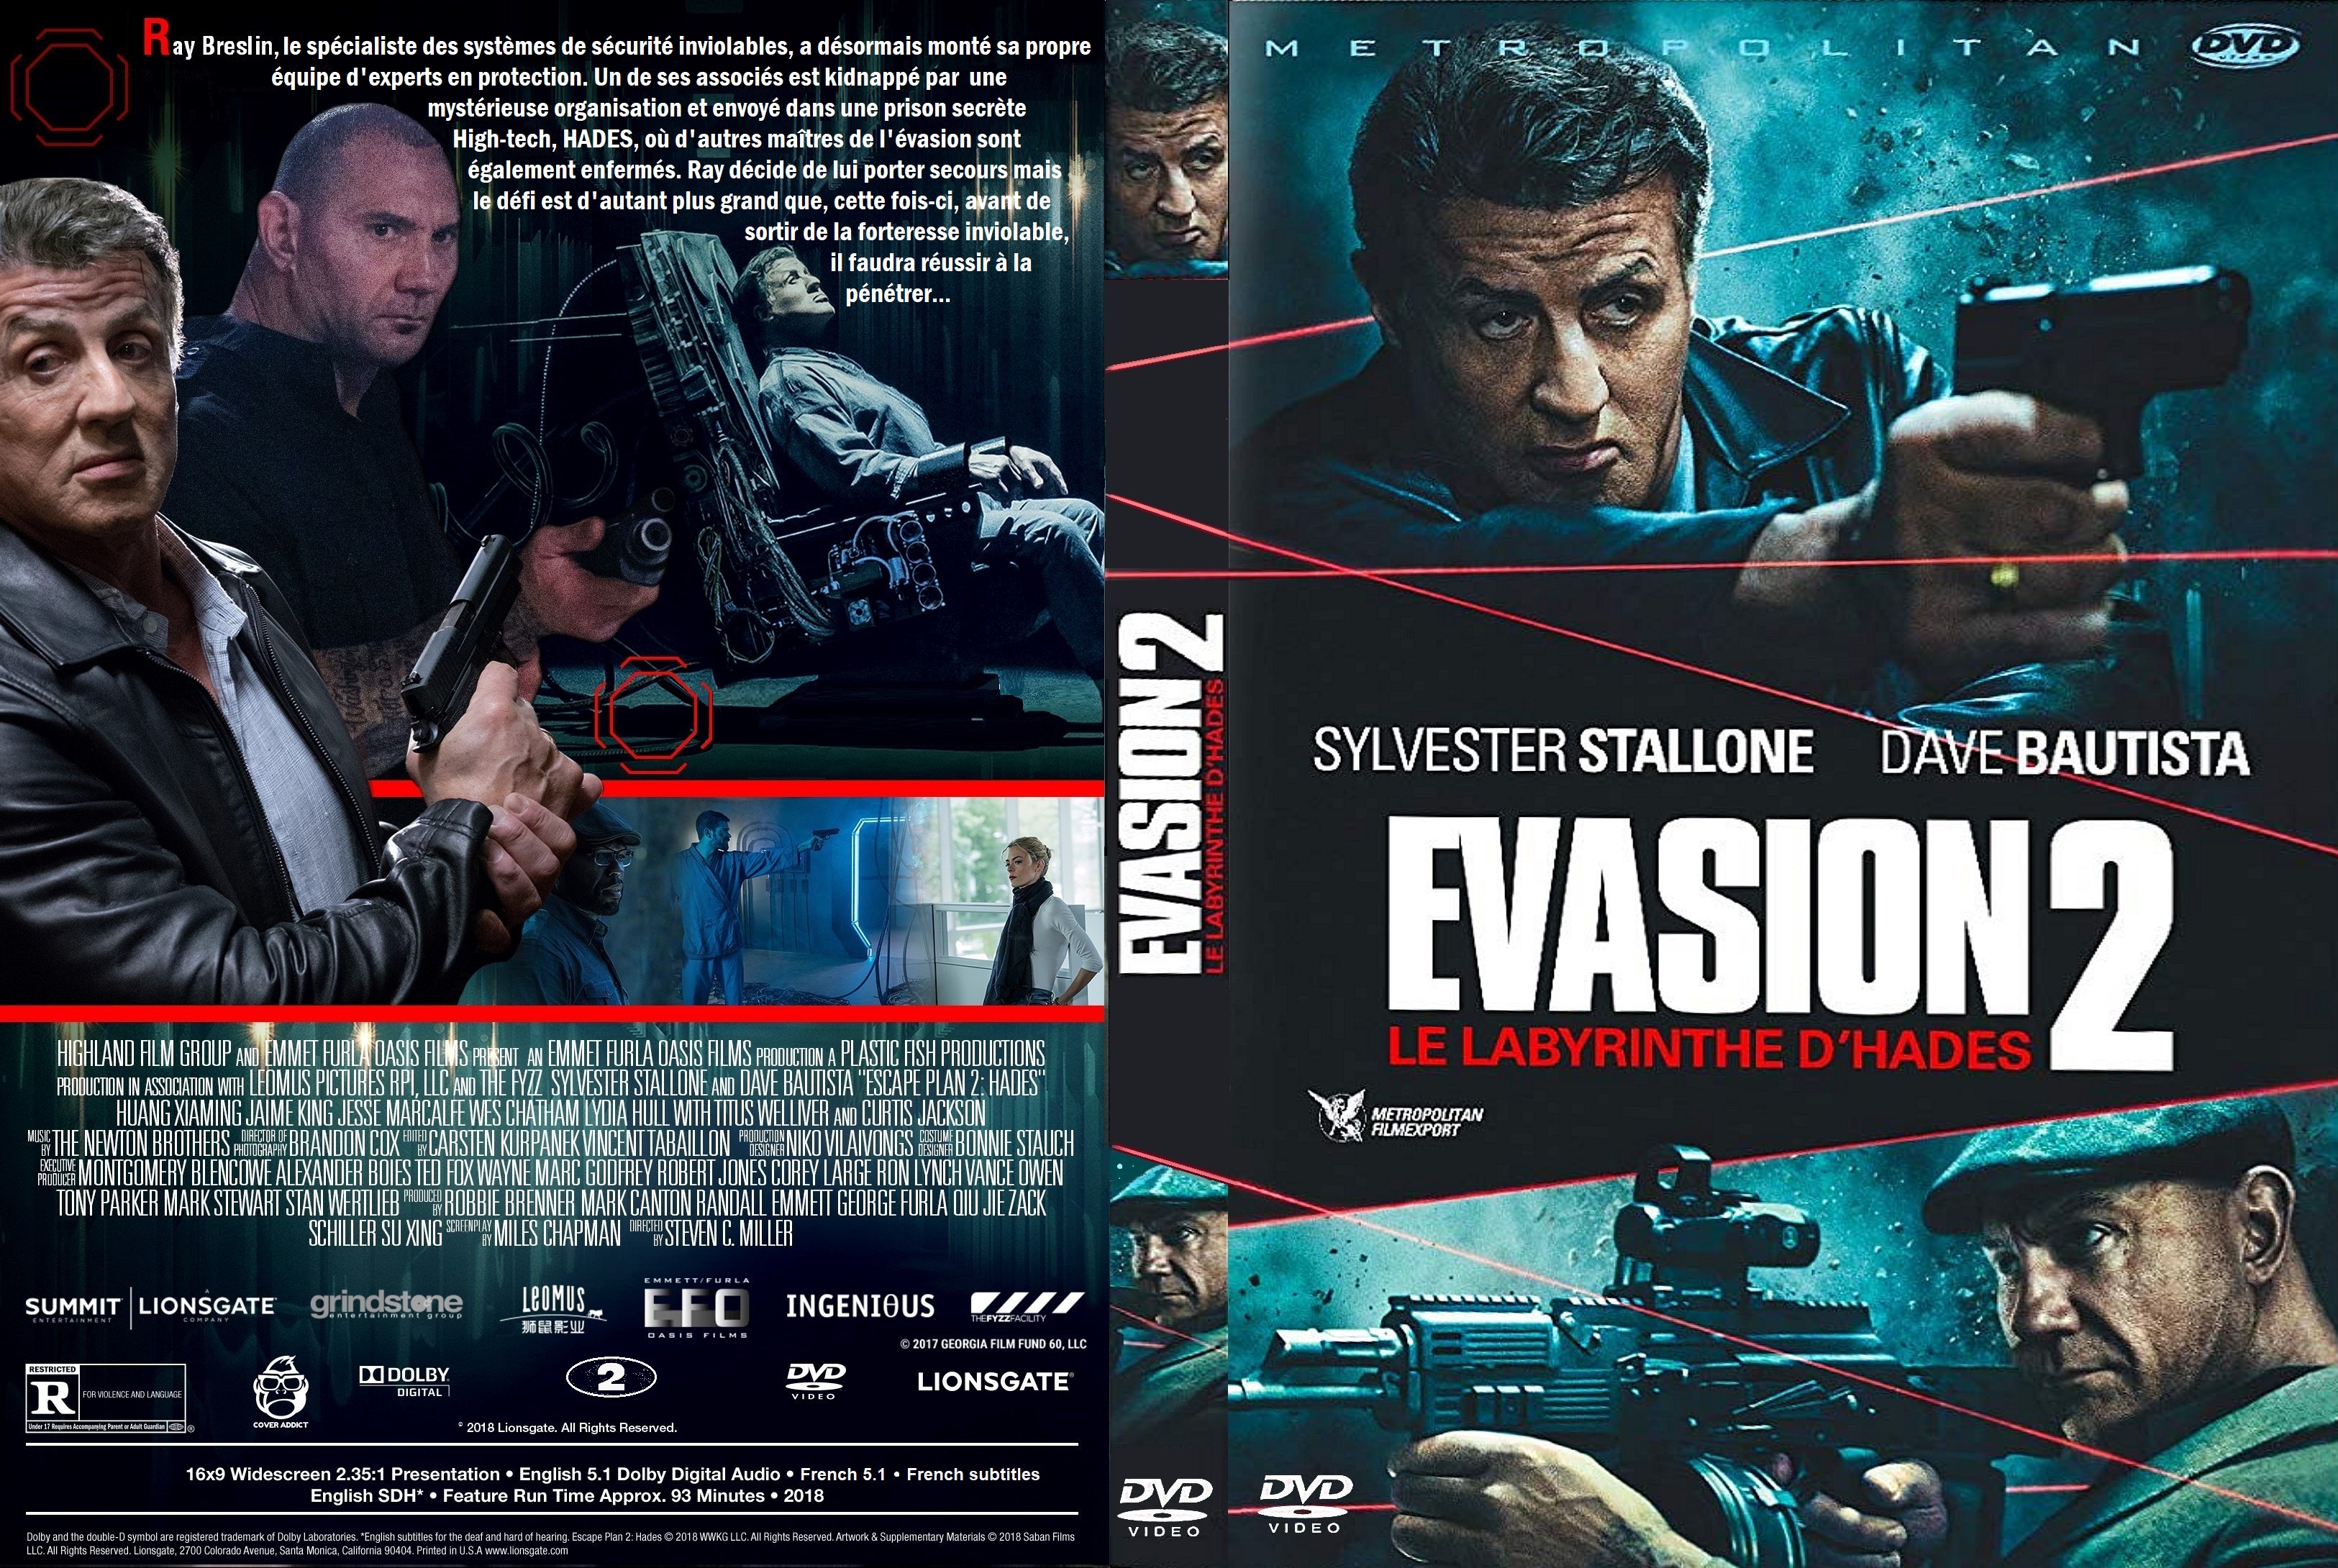 Jaquette DVD Evasion 2 custom